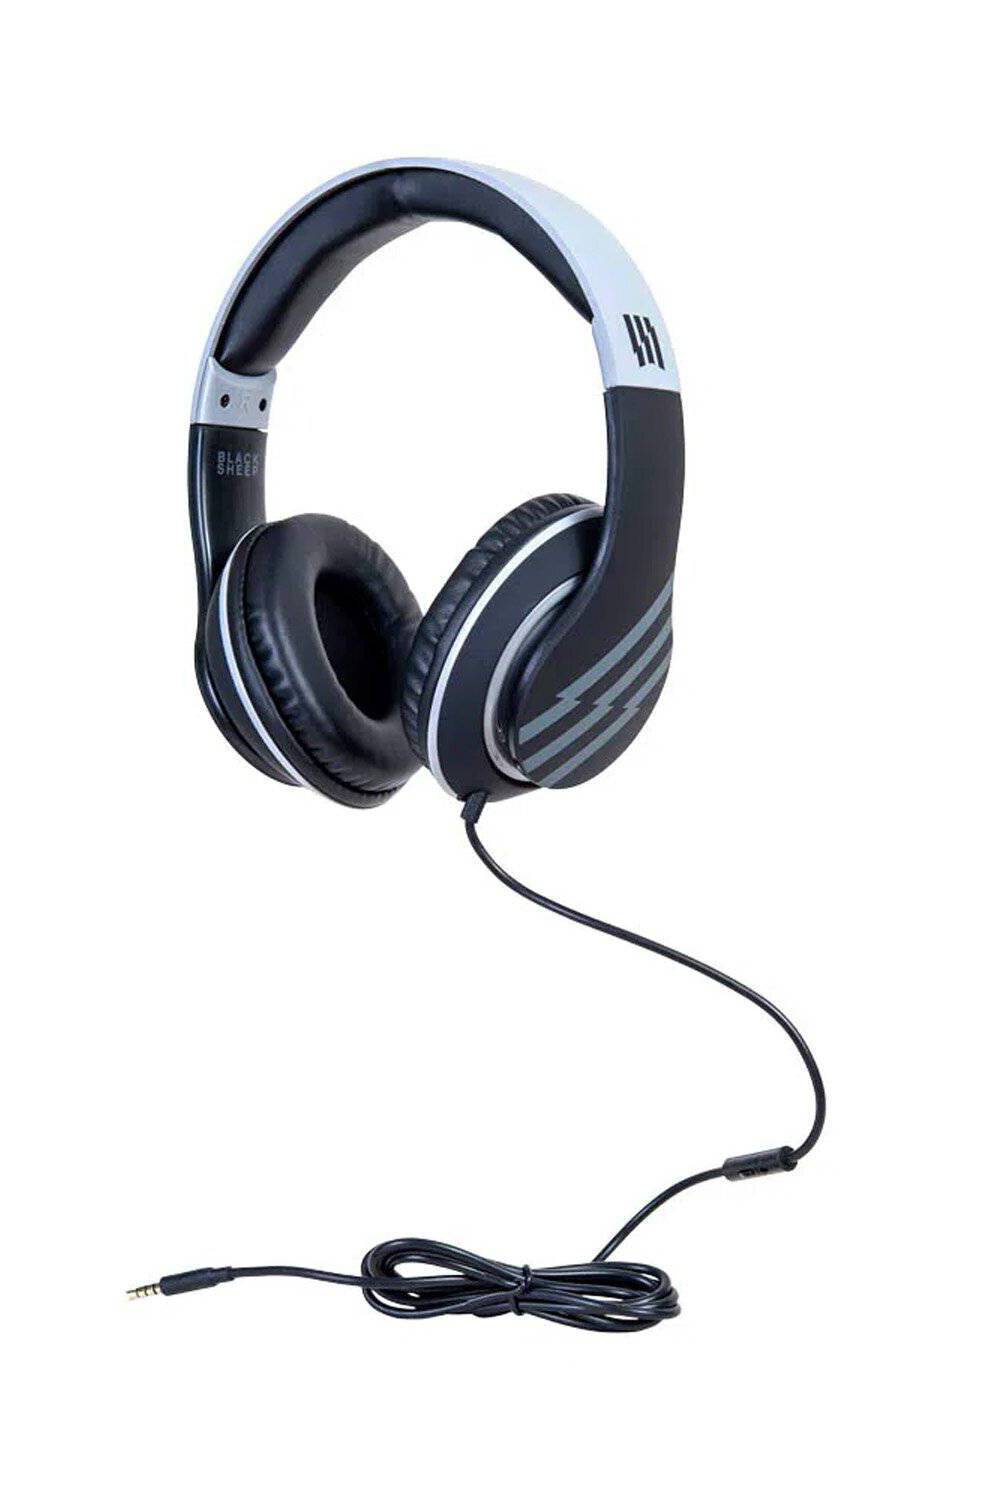 BLACKSHEEP - Pack escolar gris audífonos over ear + mochila